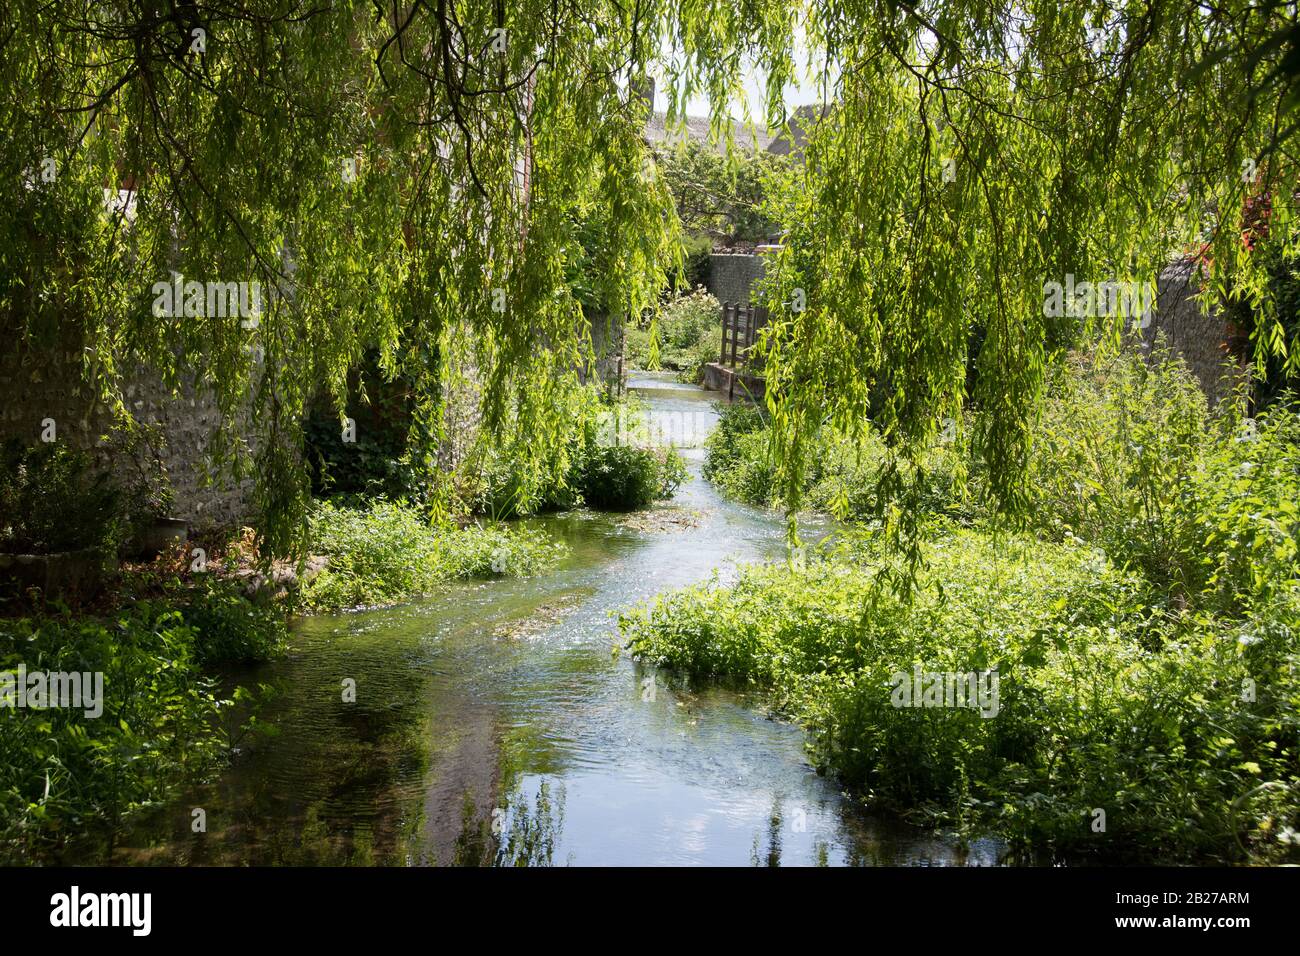 Willow albero che cresce accanto ad un fiume e sovrasta Foto Stock